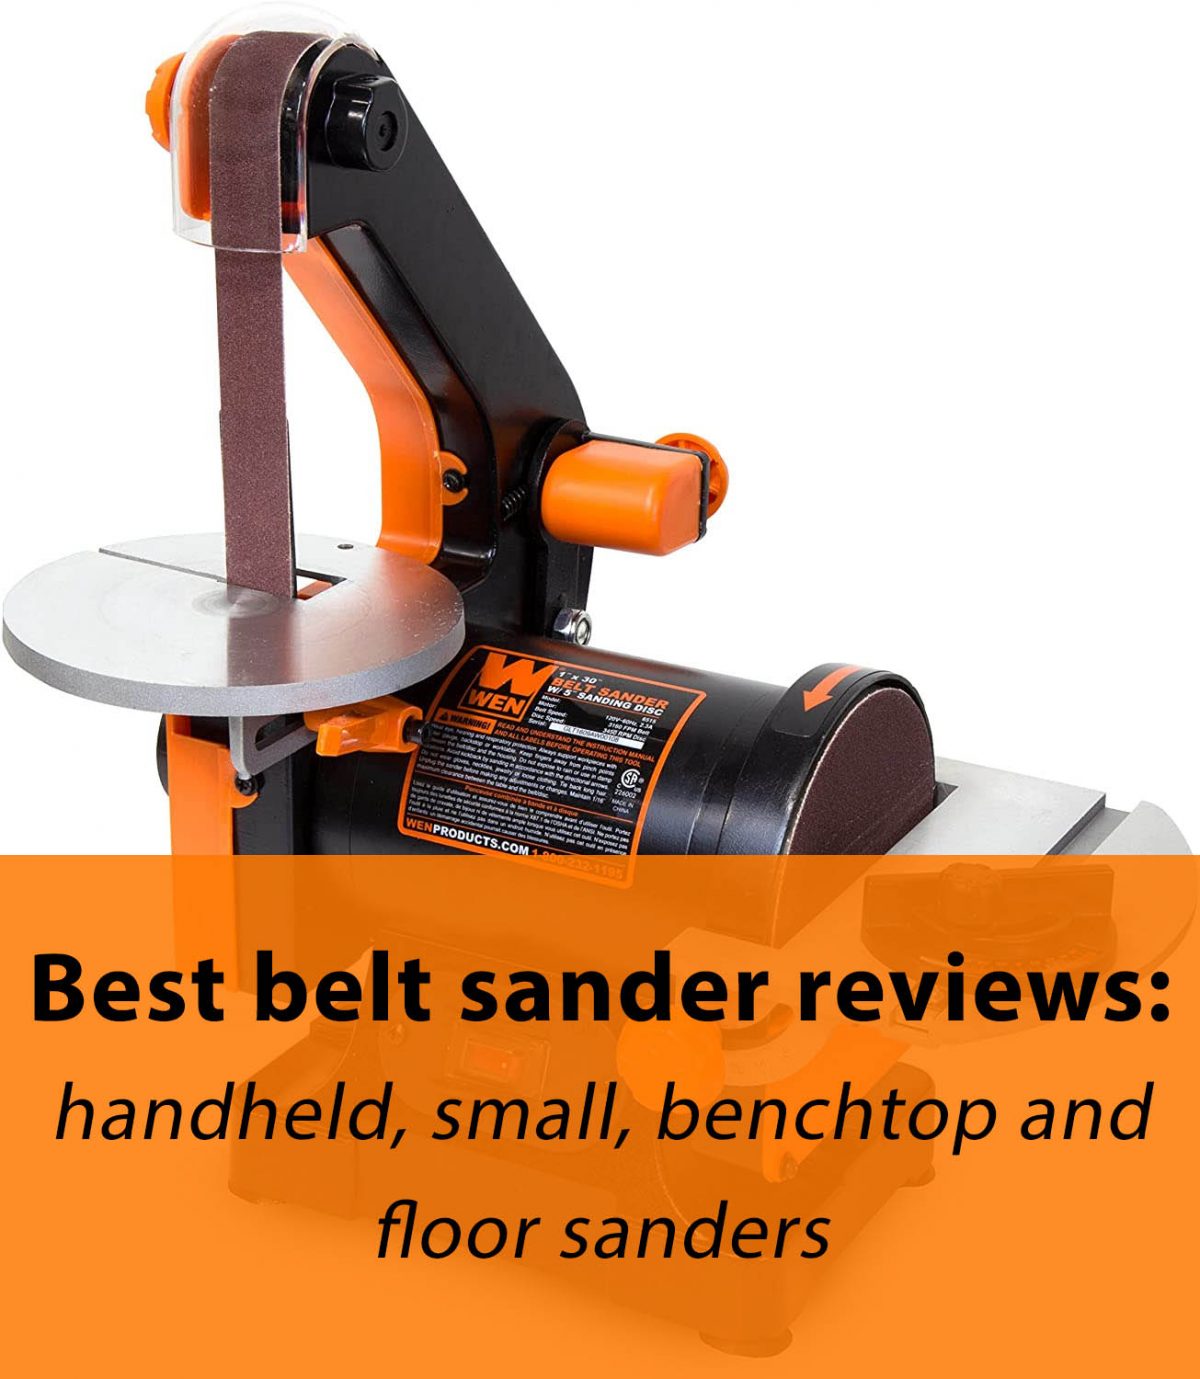 Best belt sander reviews: handheld, small, benchtop and floor sanders